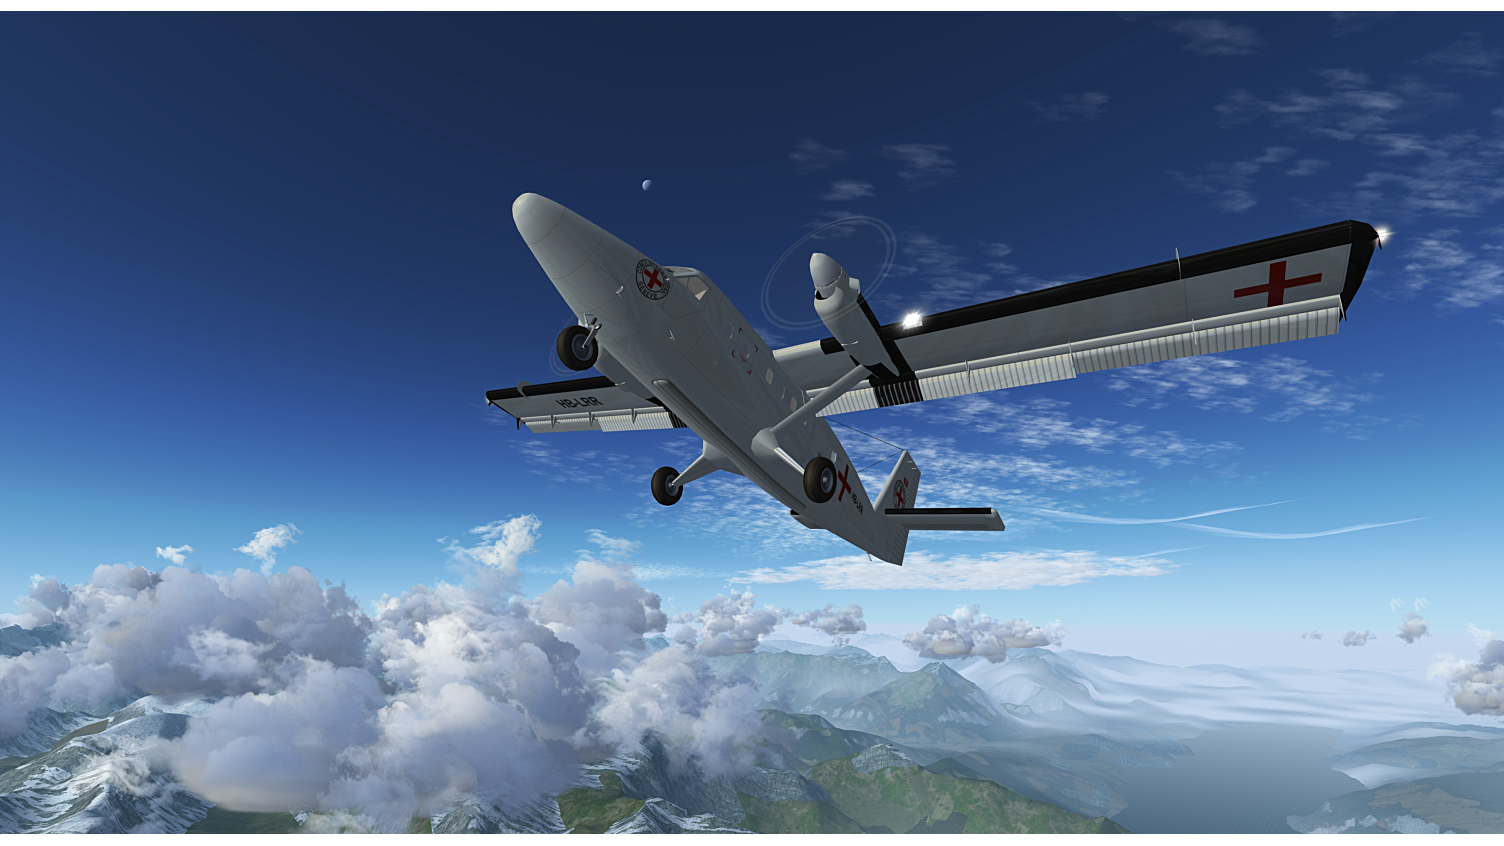 flightgear 3.4 world scenery